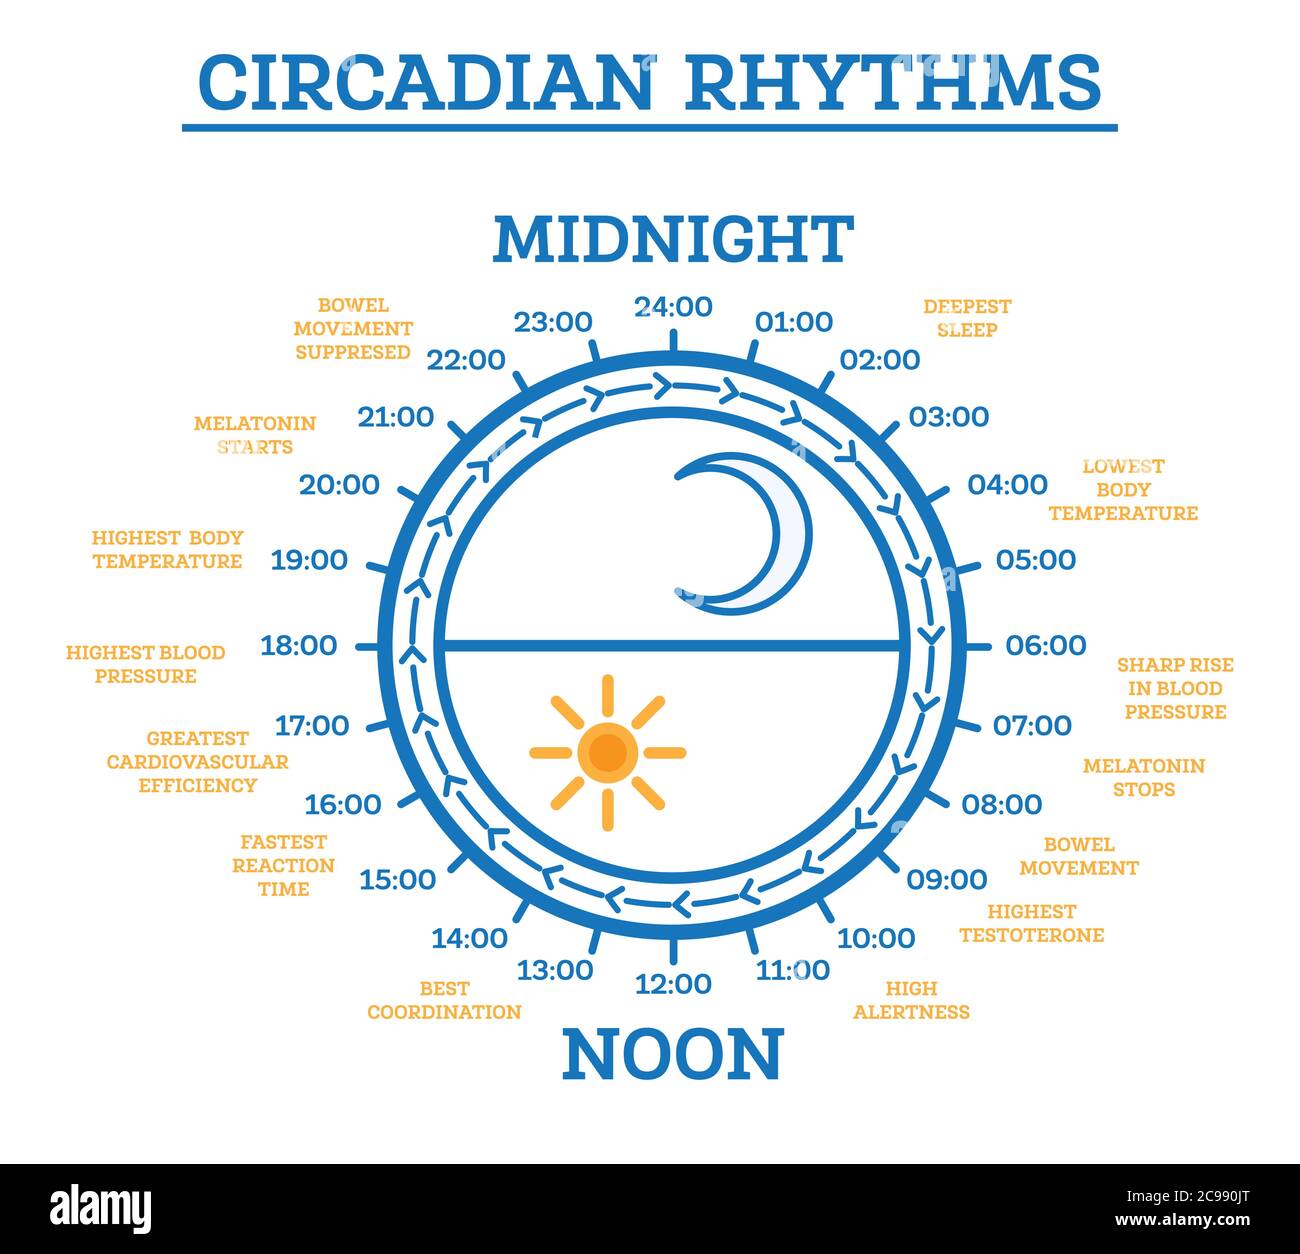 Zirkadianer Rhythmus. Vektorgrafik. Schema des Sleep-Wake-Zyklus. Infografik-Elemente. Sonneneinstrahlung reguliert die Hormonproduktion. Stock Vektor